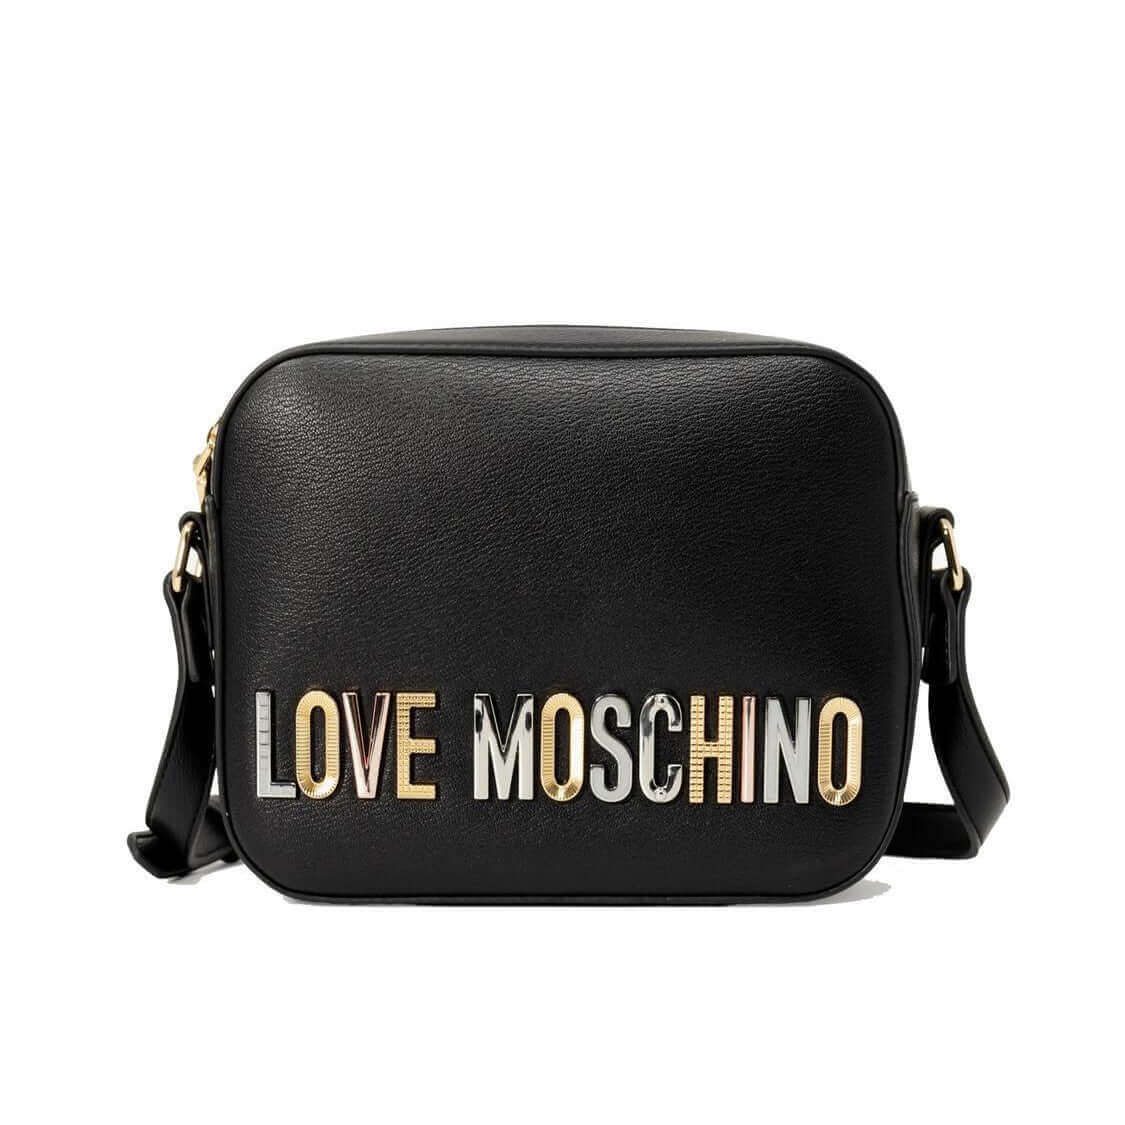 Love Moschino Borsa Camera Case Bold lettering